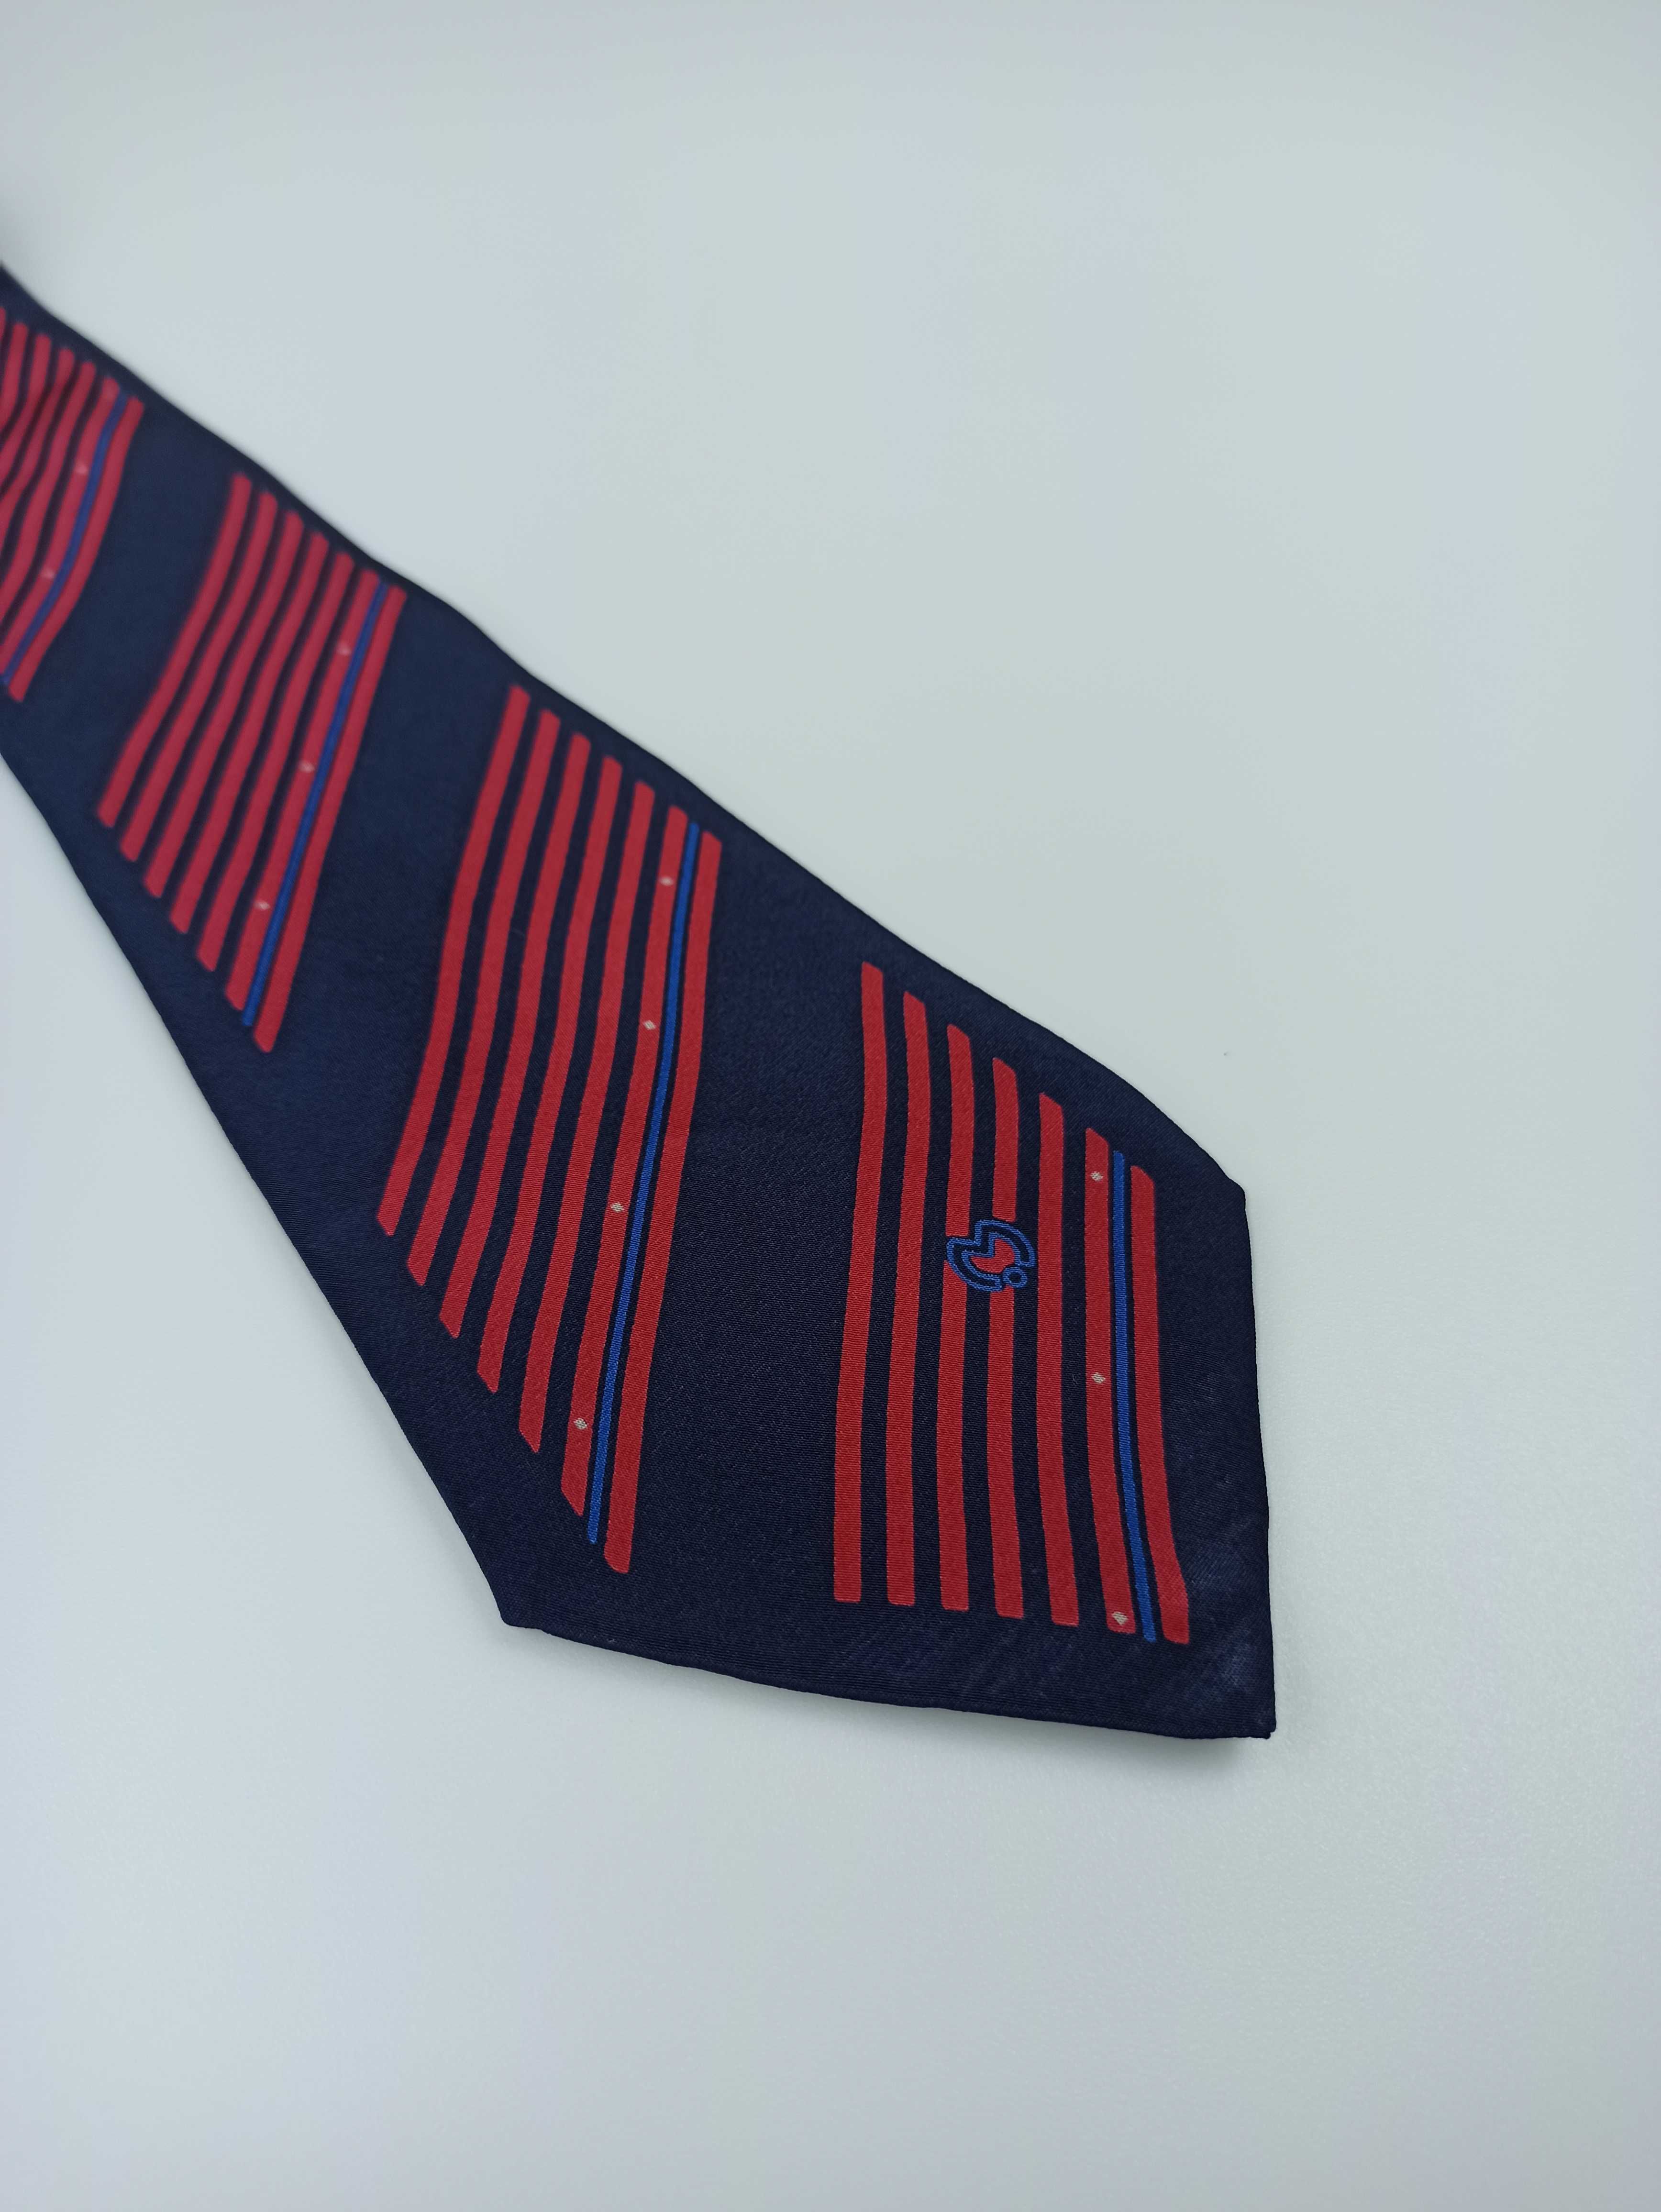 Mila Schon granatowy jedwabny krawat w paski vintage retro fa31